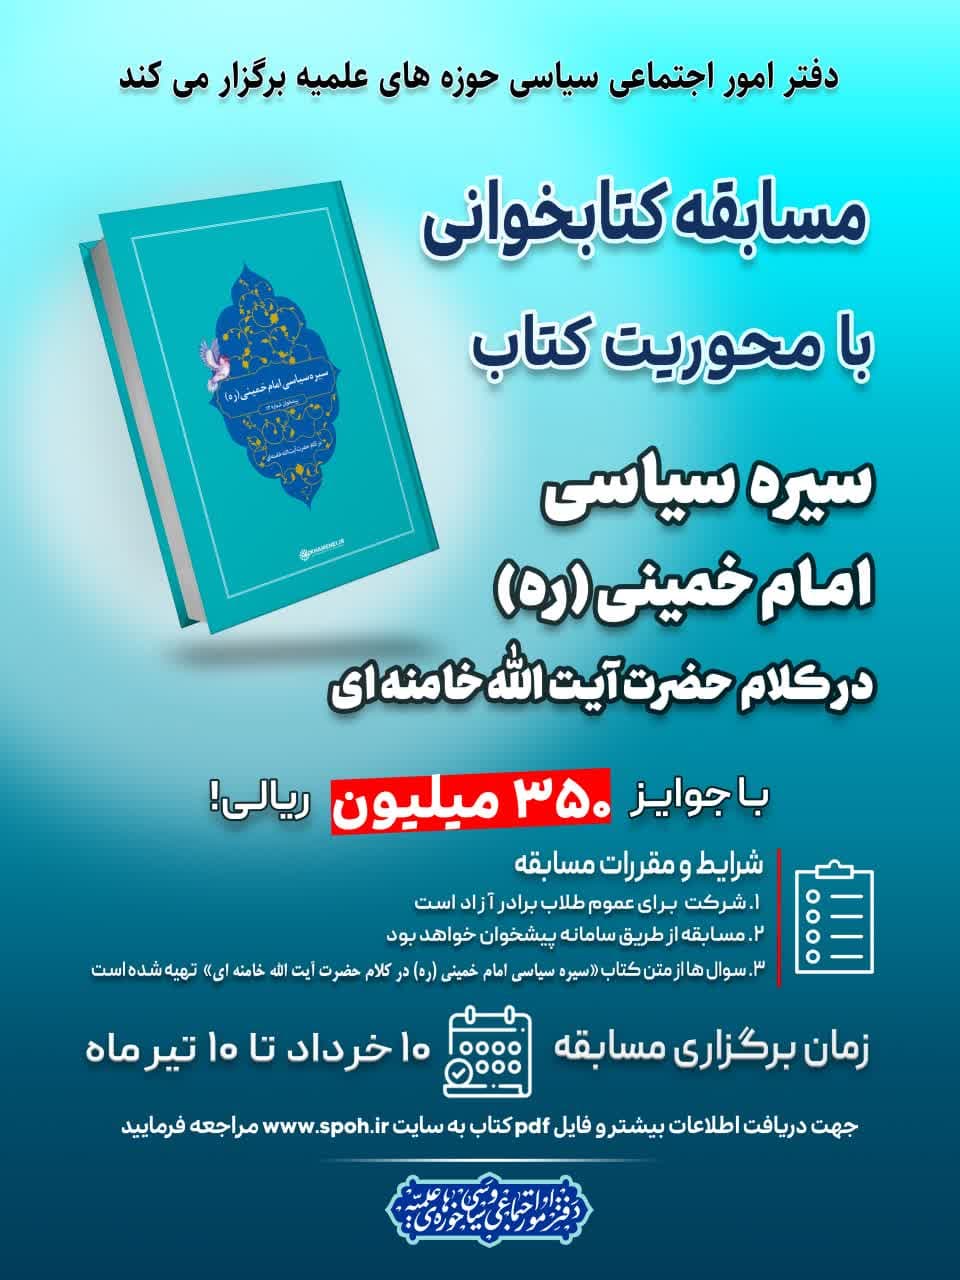 مسابقه کتابخوانی از کتاب سیره سیاسی امام خمینی در کلام امام خامنه ای